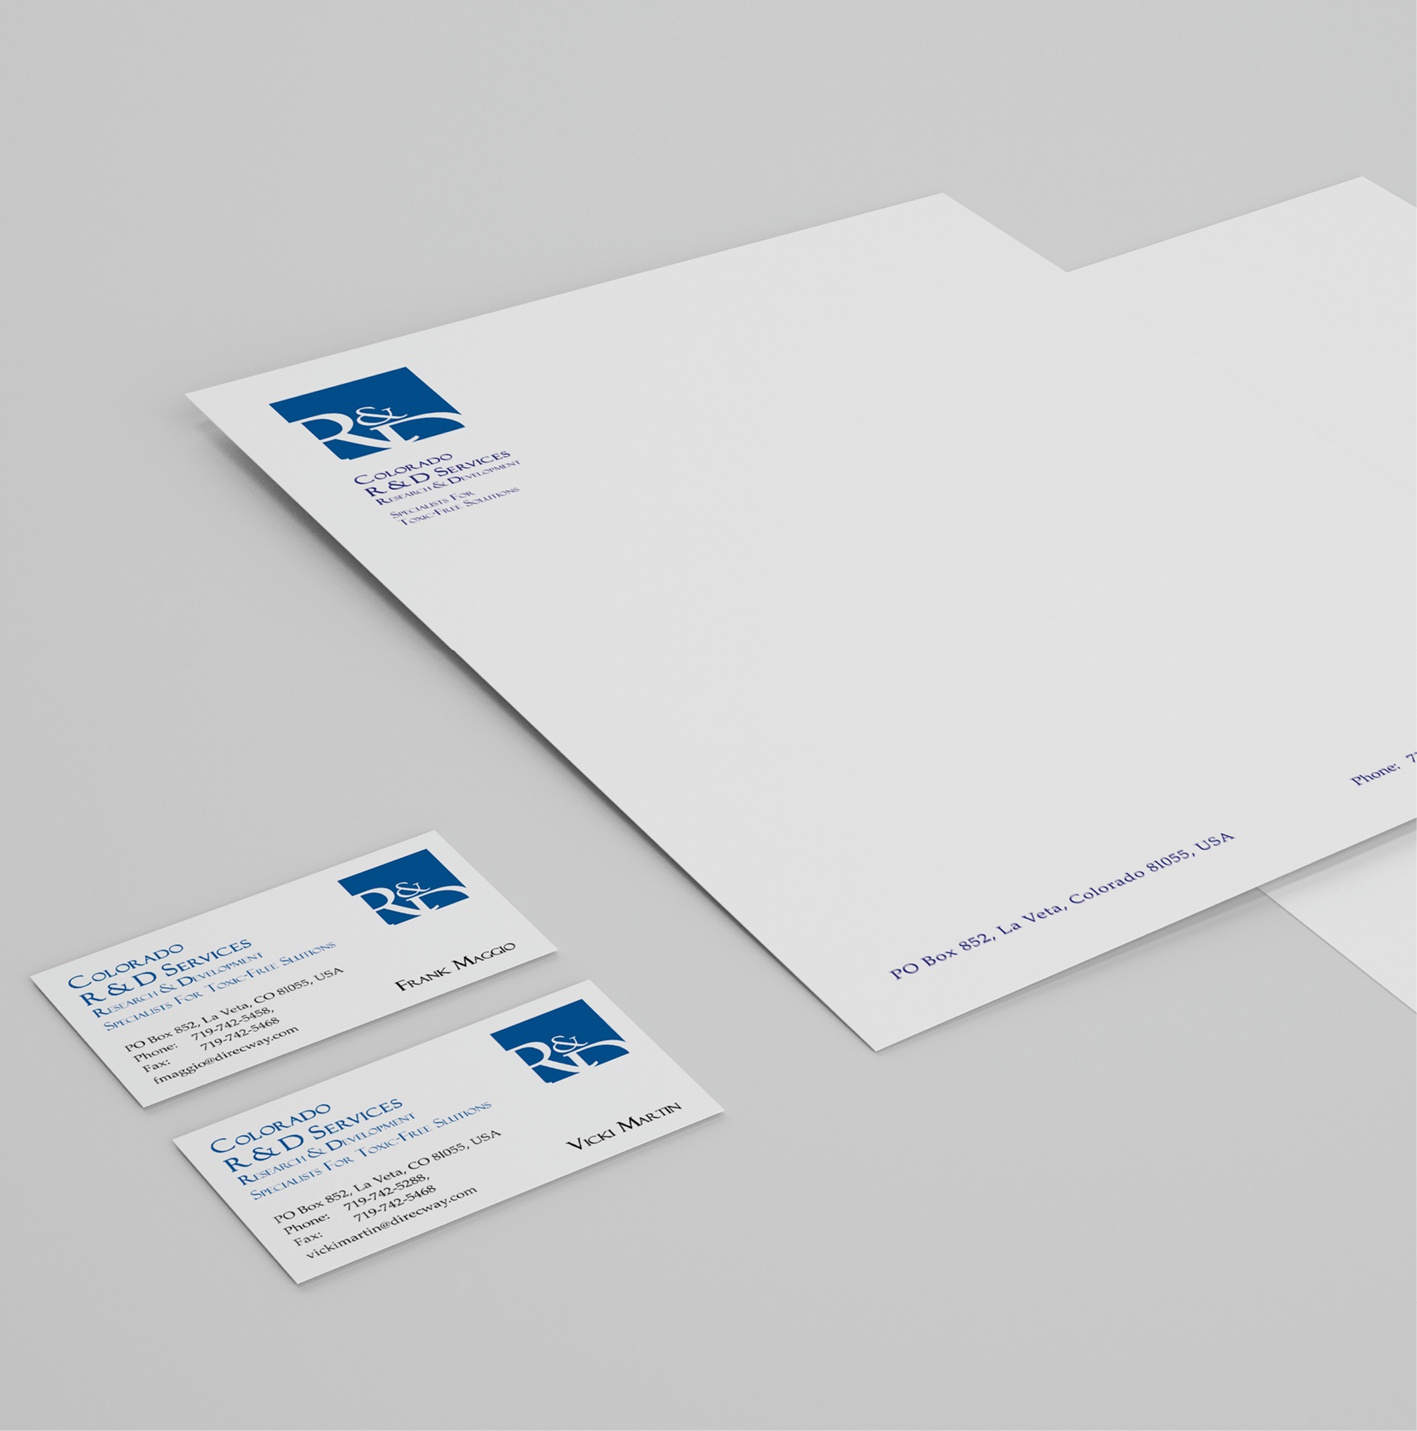 R&D Services - Corporate Design: Logo-Entwicklung, Briefbogen, Visitenkarte, Konzeption und Gestaltung der Geschäftsausstattung, Briefpapier, Layoutumsetzung, Reinzeichnung und Druckausgabe.